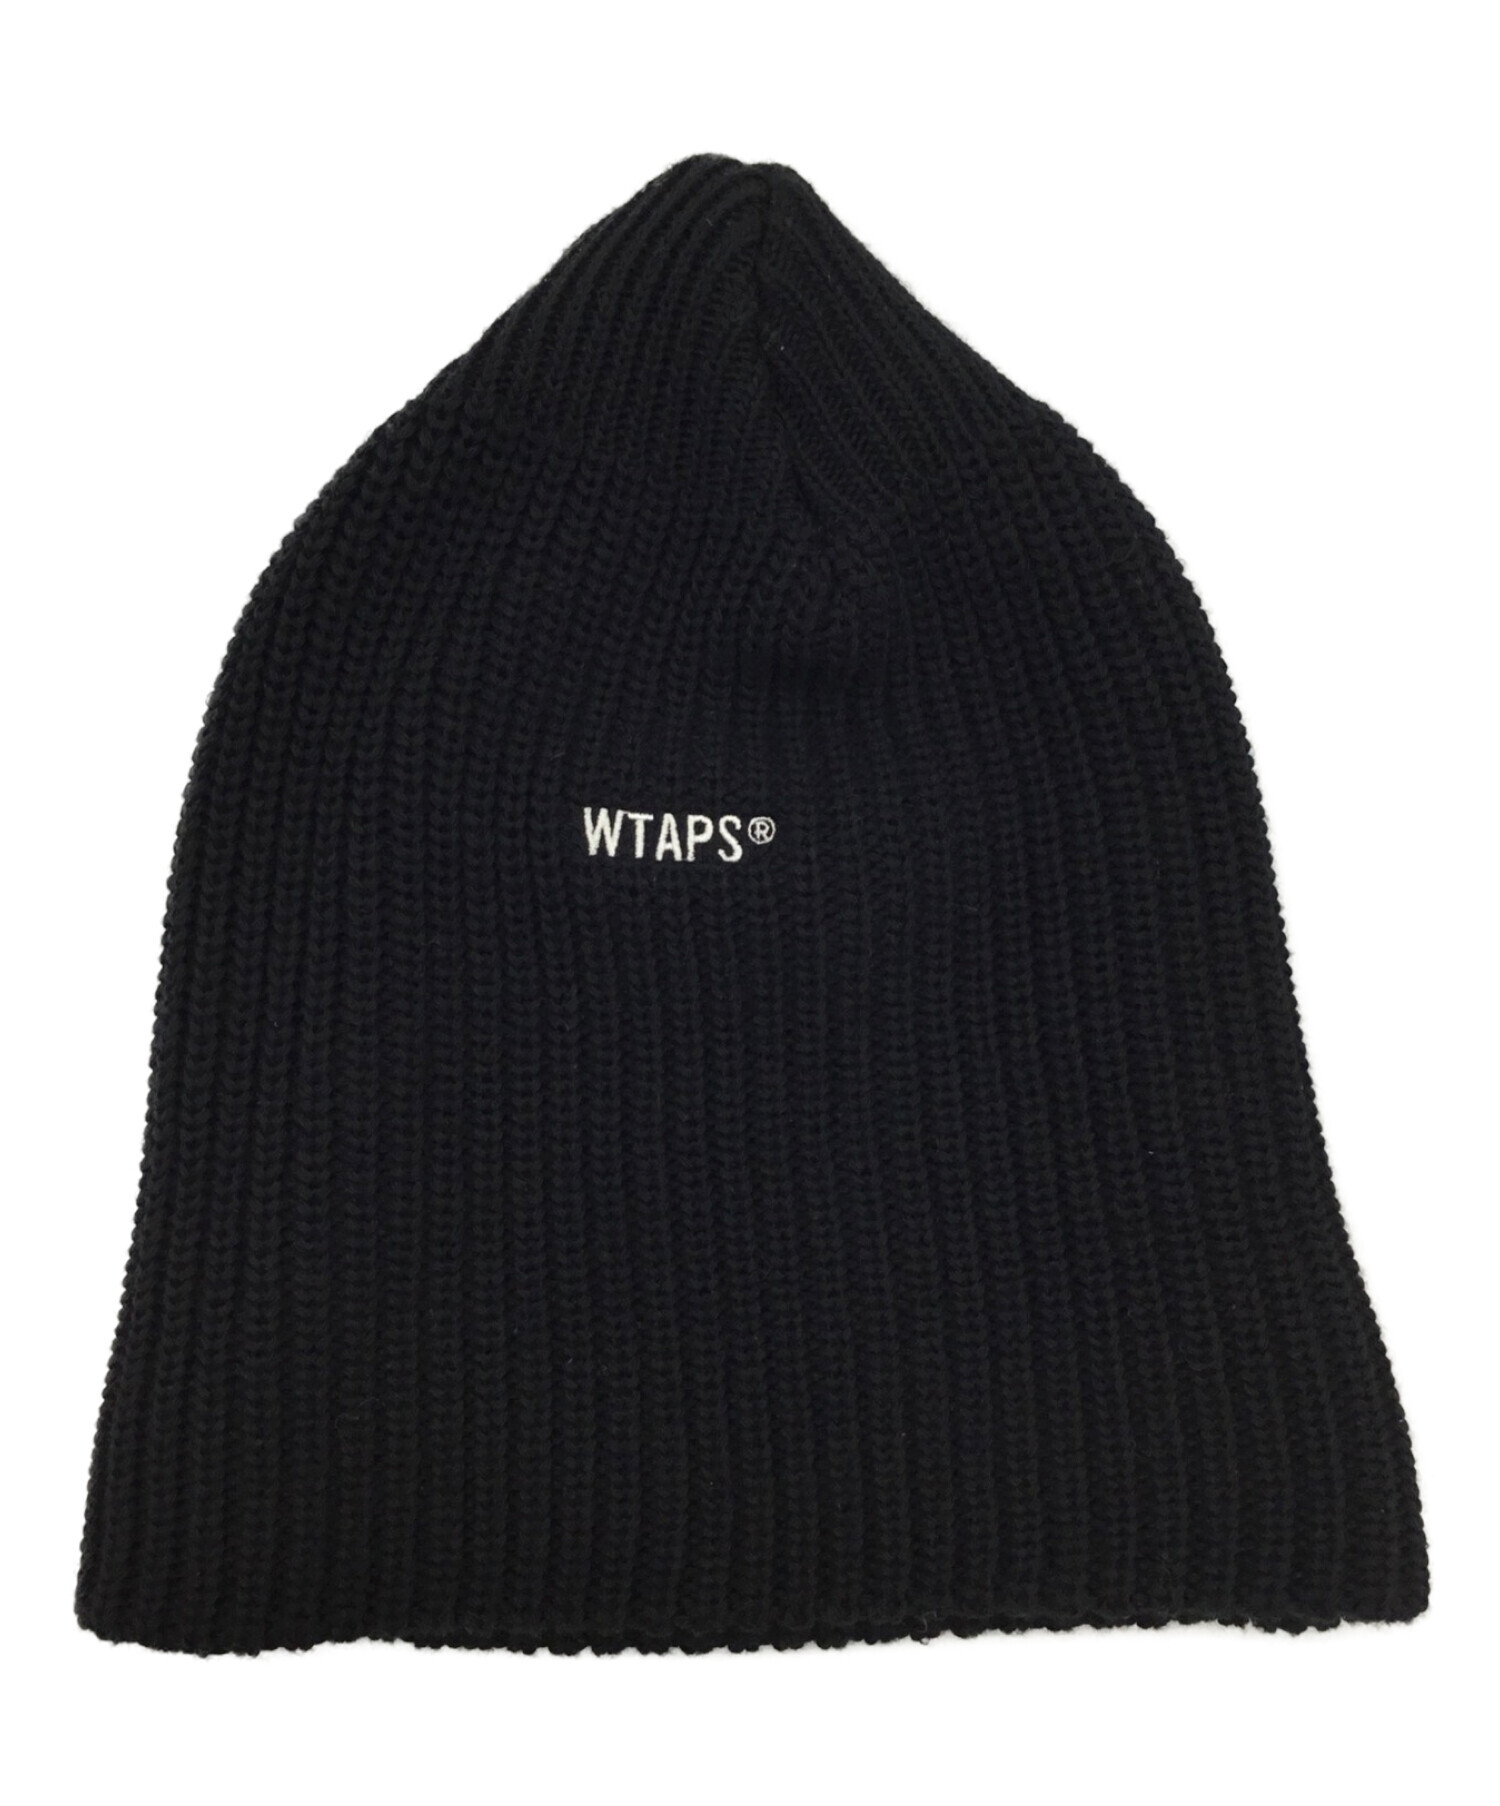 Wtaps HBT SWEATER BLACK ダブルタップス ウール ニット - ニット/セーター